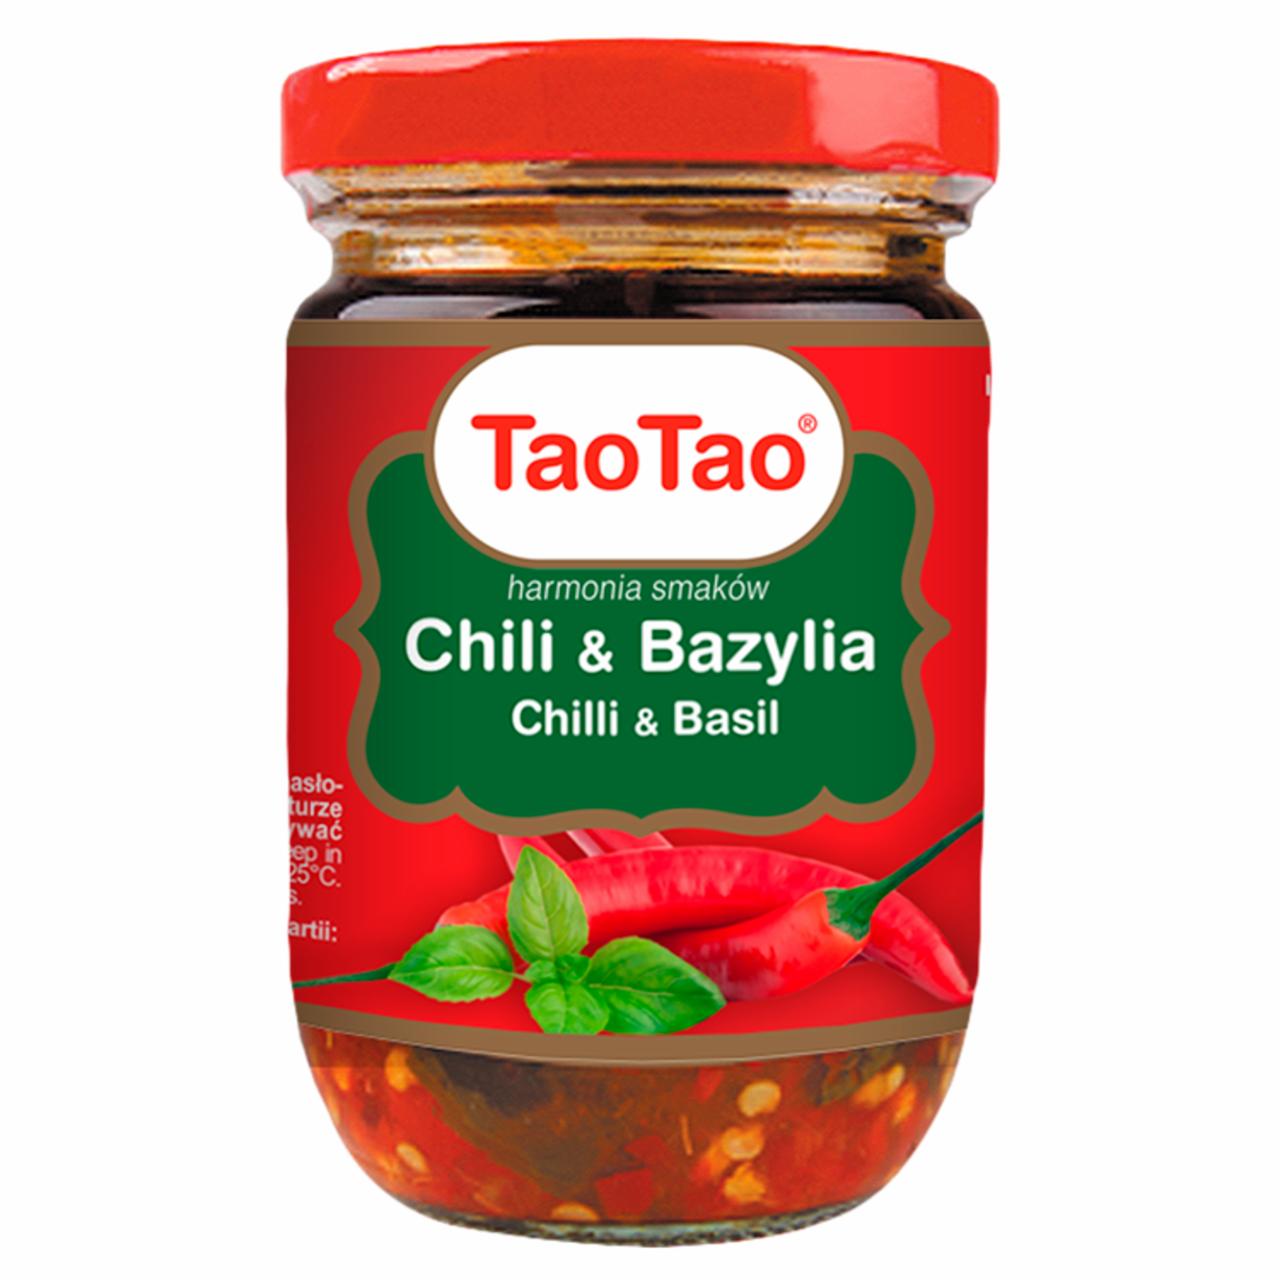 Zdjęcia - Tao Tao Mix przypraw w oleju sojowym chili & bazylia 200 g